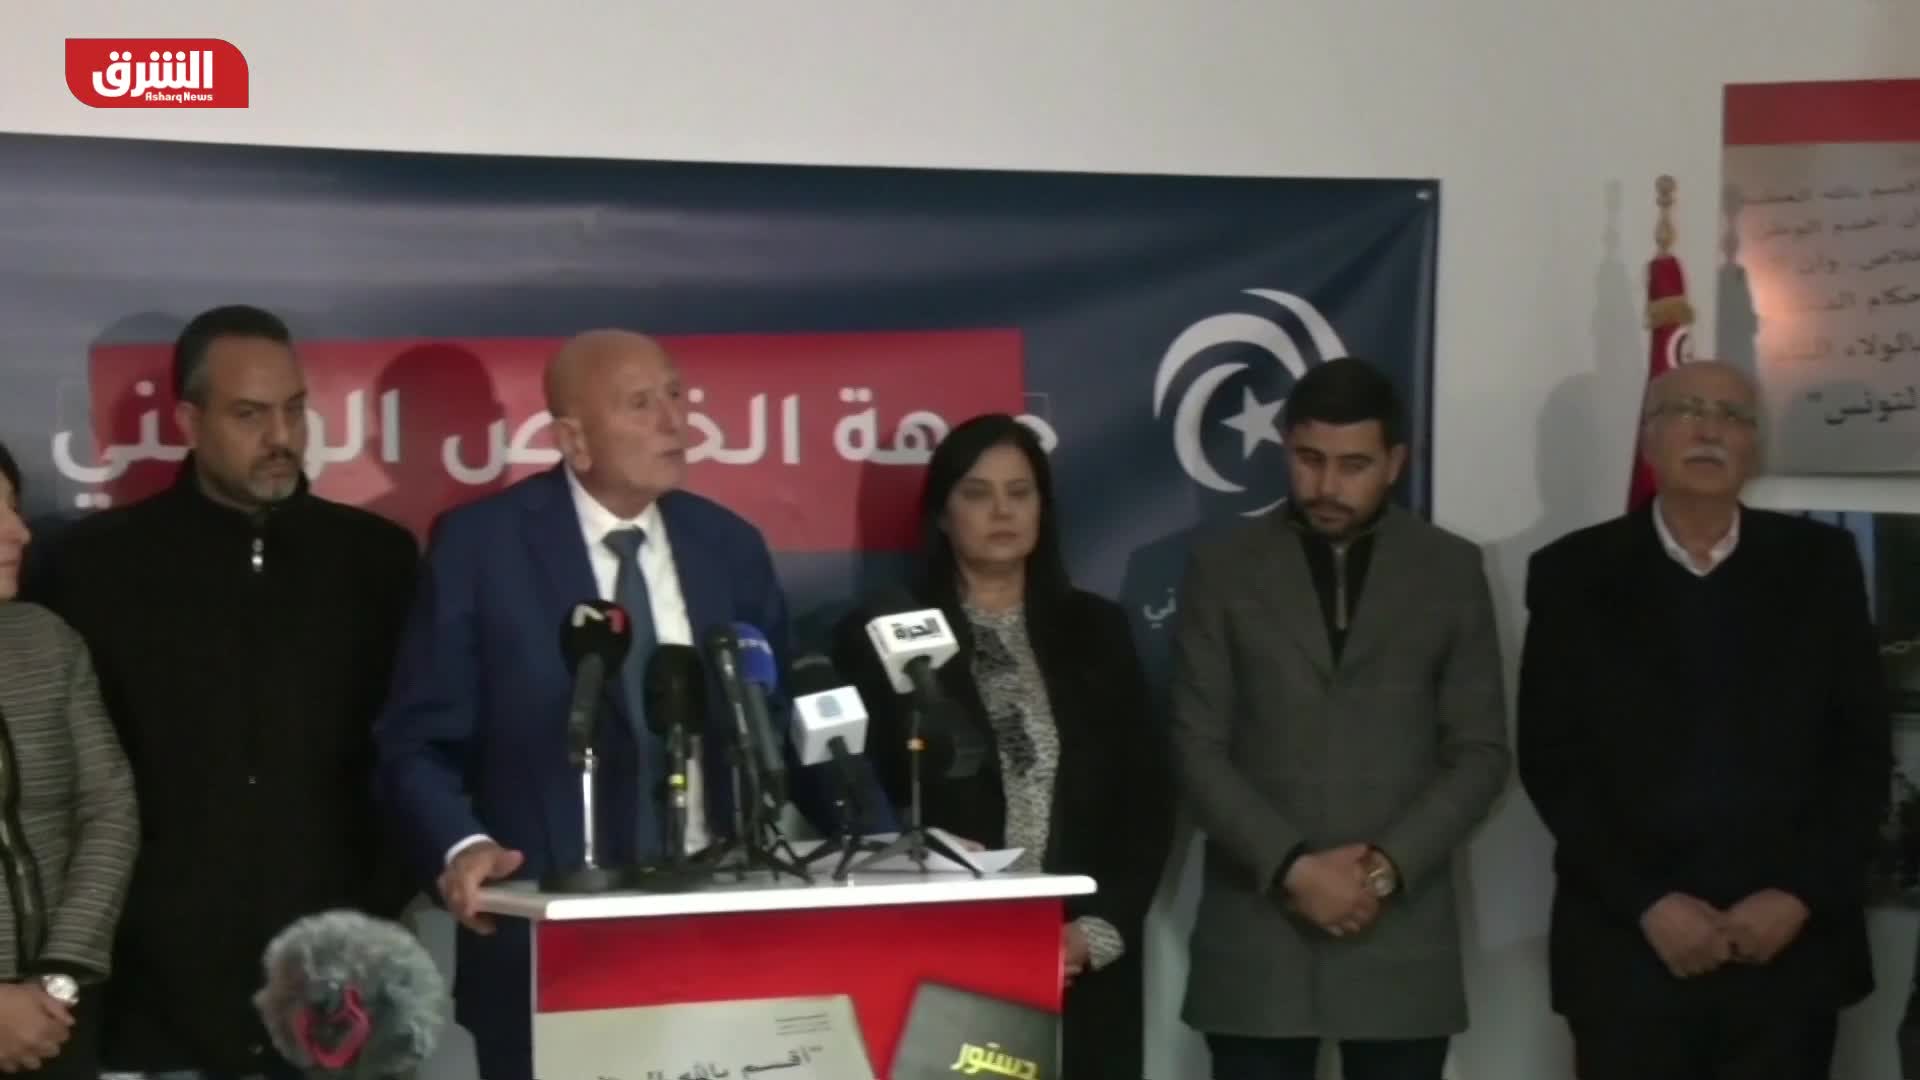 دلالات العزوف عن المشاركة في الانتخابات التشريعية التونسية